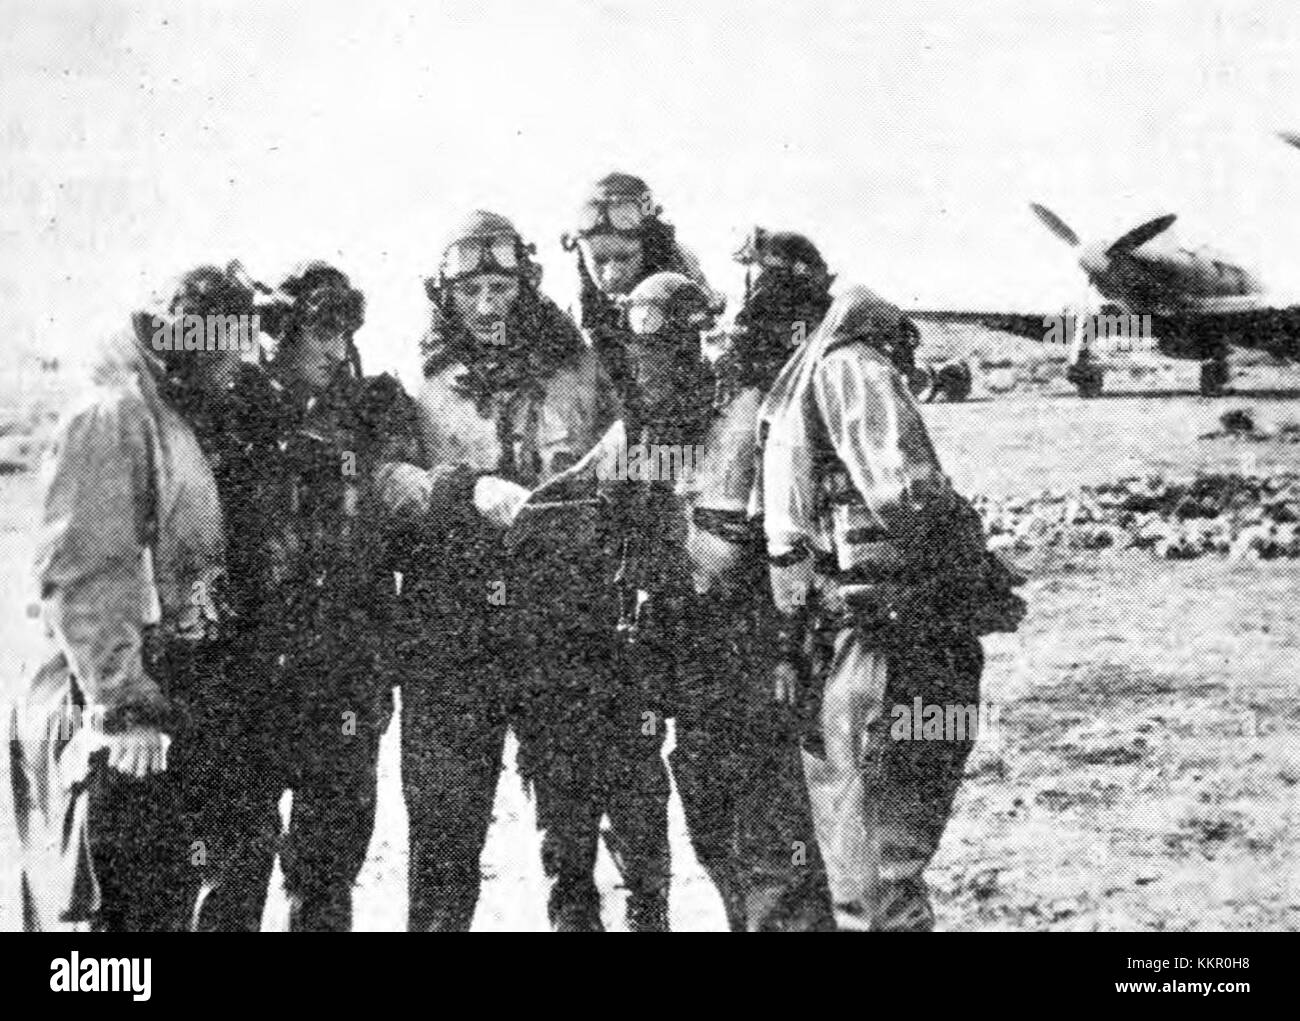 Piloti Druge lovske eskadrilje se posvetujejo pred borbenim poletom Stock Photo